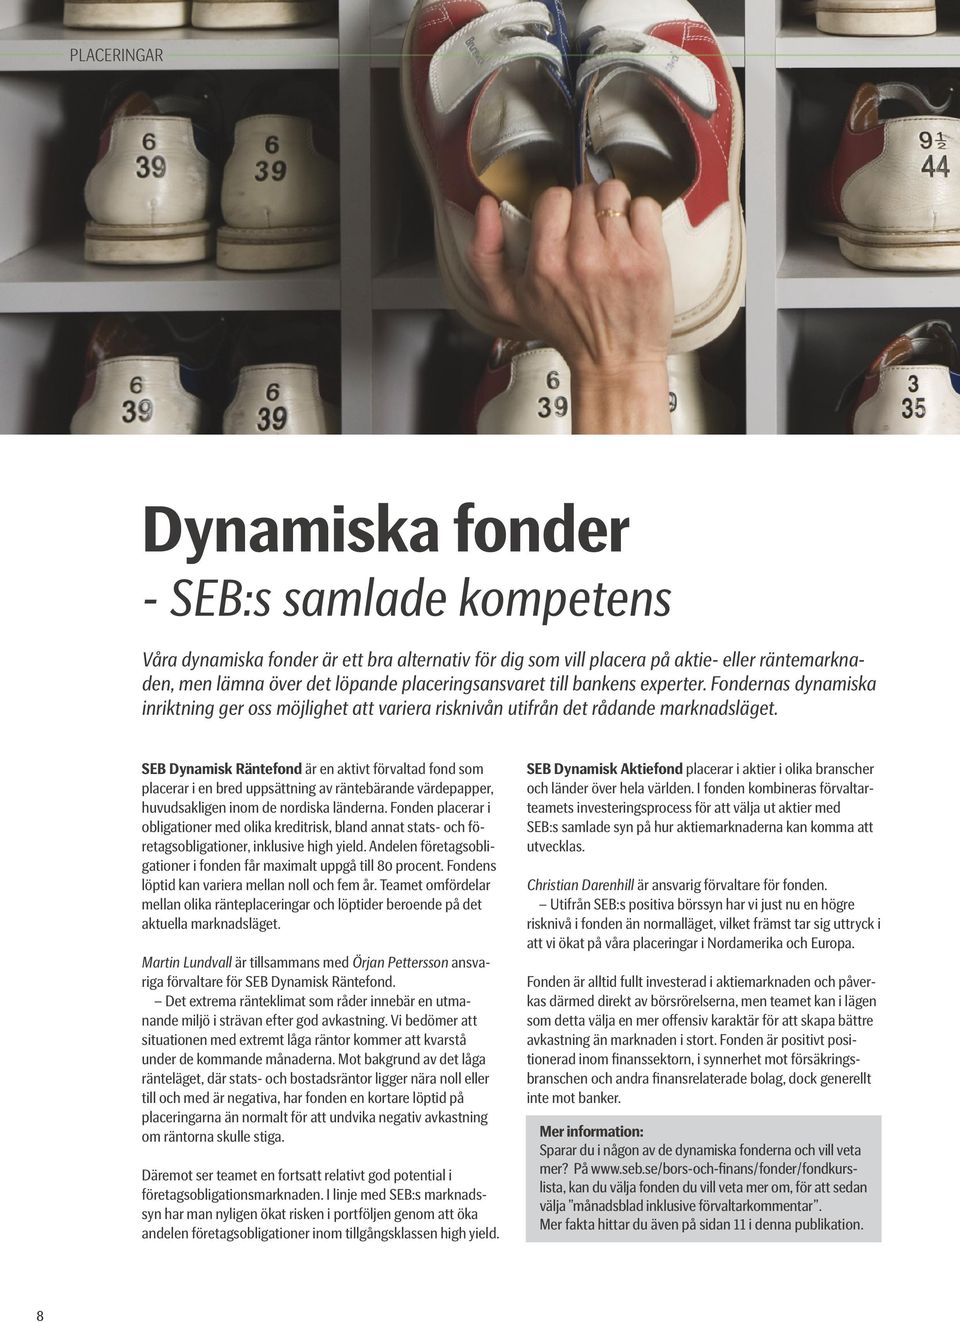 SEB Dynamisk Räntefond är en aktivt förvaltad fond som placerar i en bred uppsättning av räntebärande värdepapper, huvudsakligen inom de nordiska länderna.